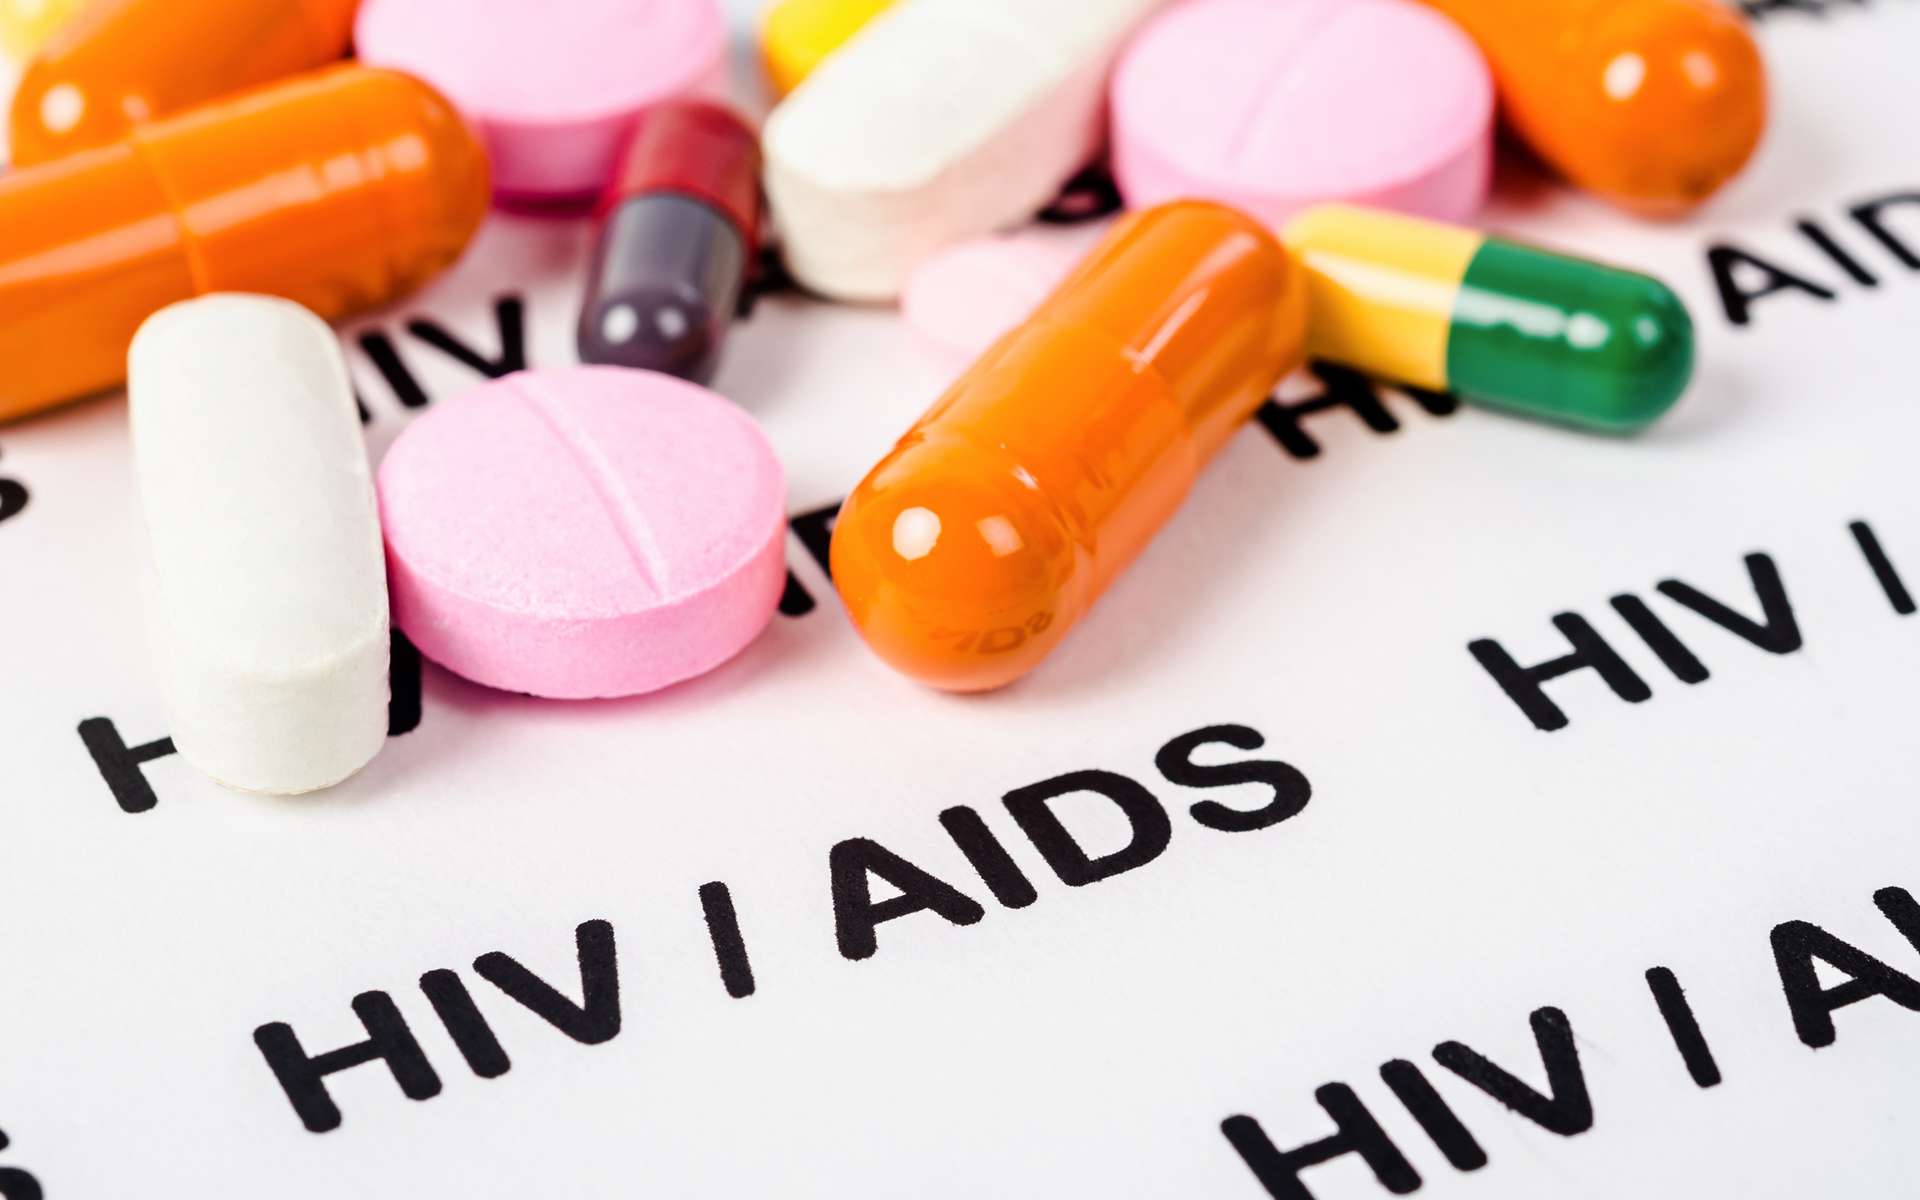 Sida : le dépistage très précoce, la clé d'un traitement durable pour le VIH